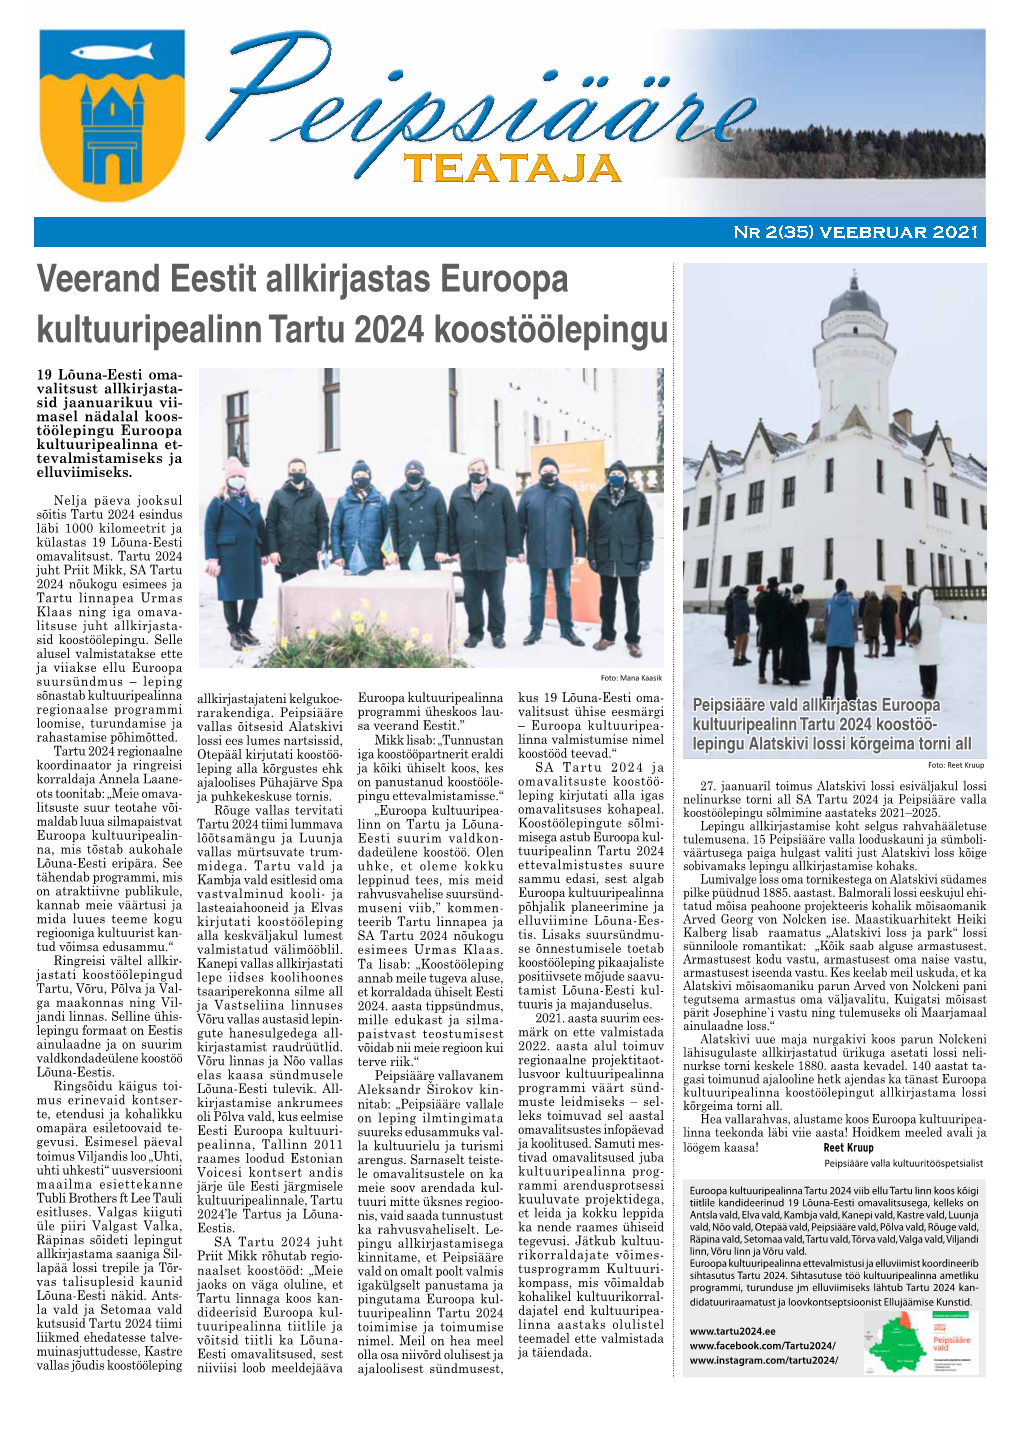 Veerand Eestit Allkirjastas Euroopa Kultuuripealinn Tartu 2024 Koostöölepingu